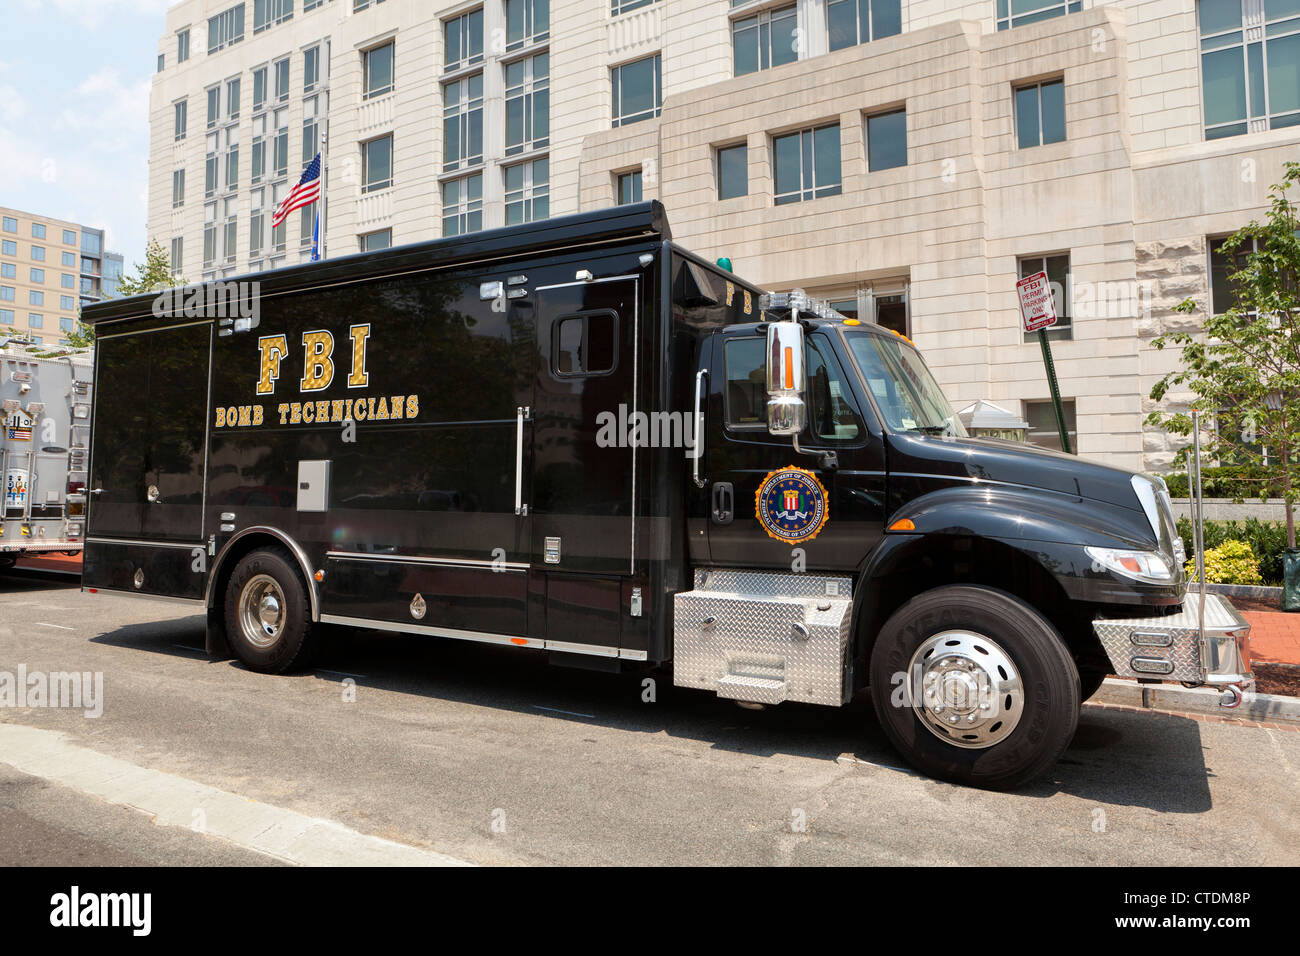 FBI Bombe Techniker van auf FBI-Außenstelle - Washington, DC USA Stockfoto